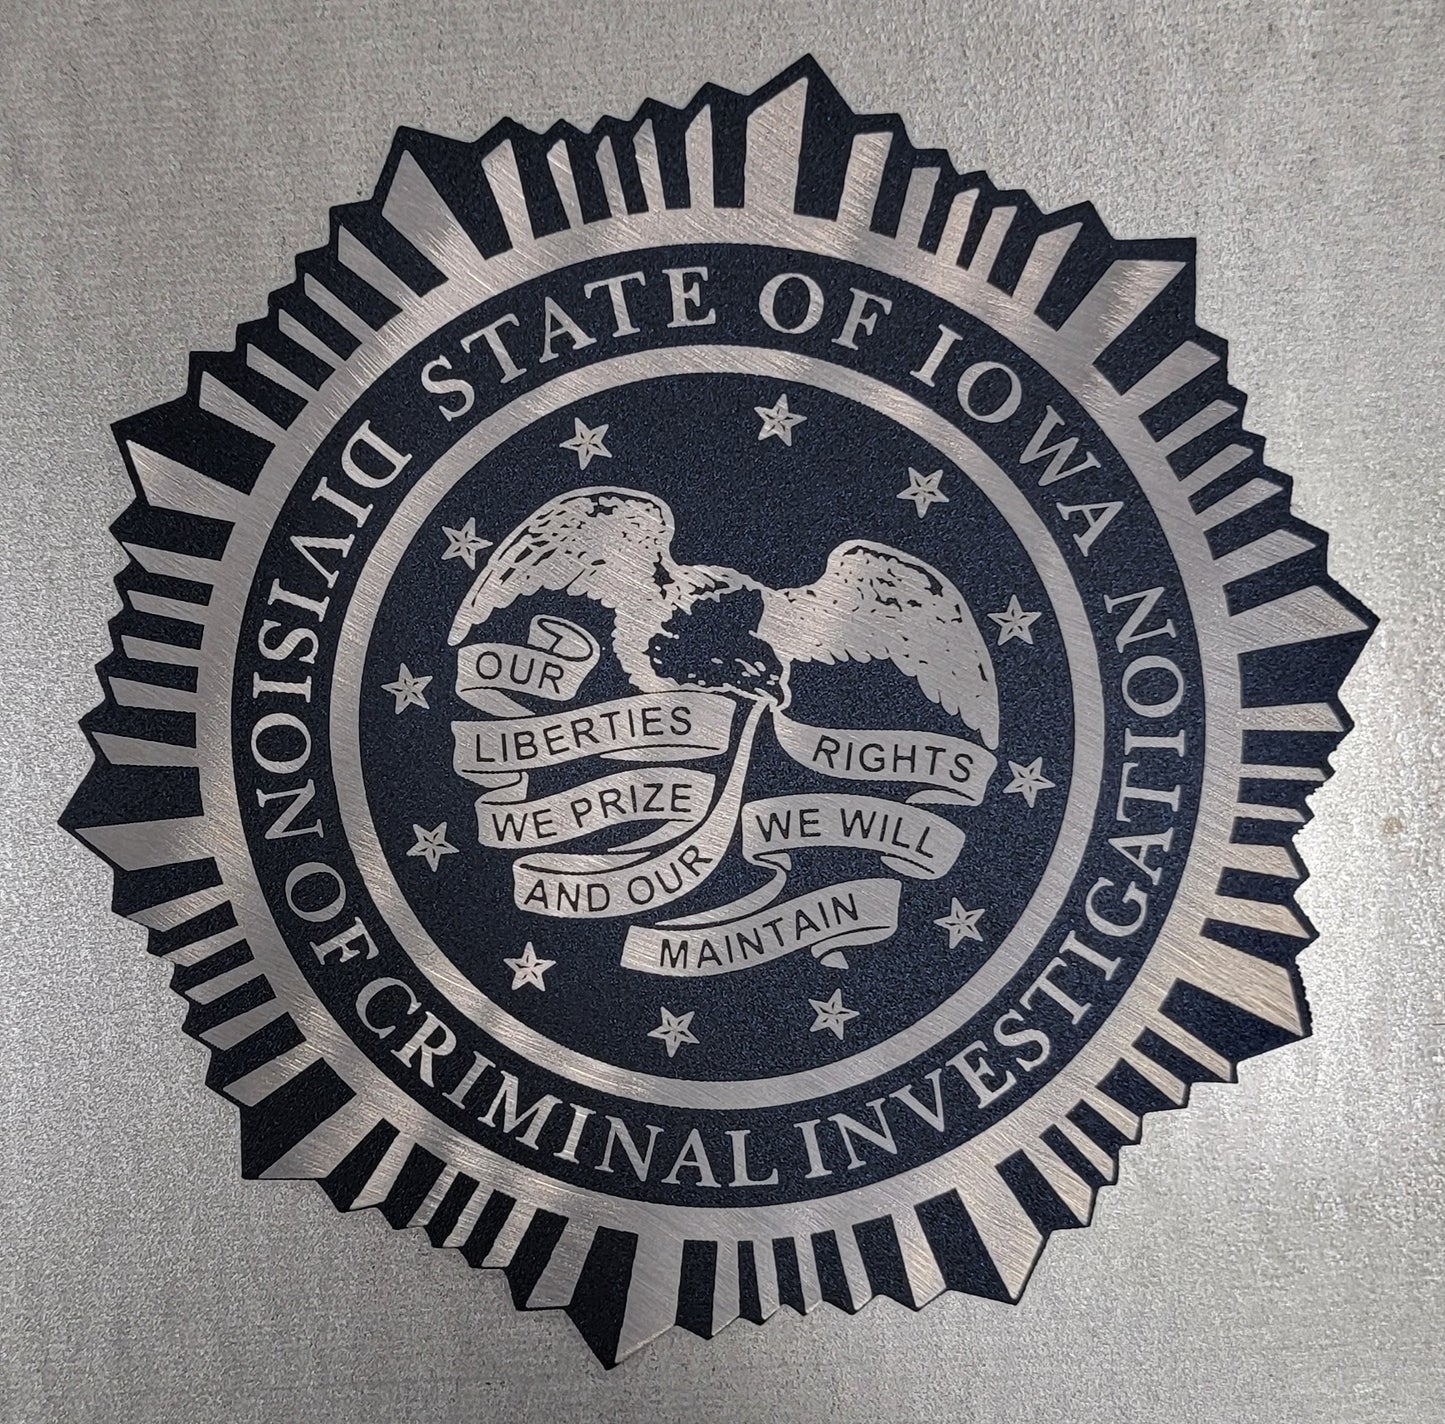 Iowa Division of Criminal Investigation